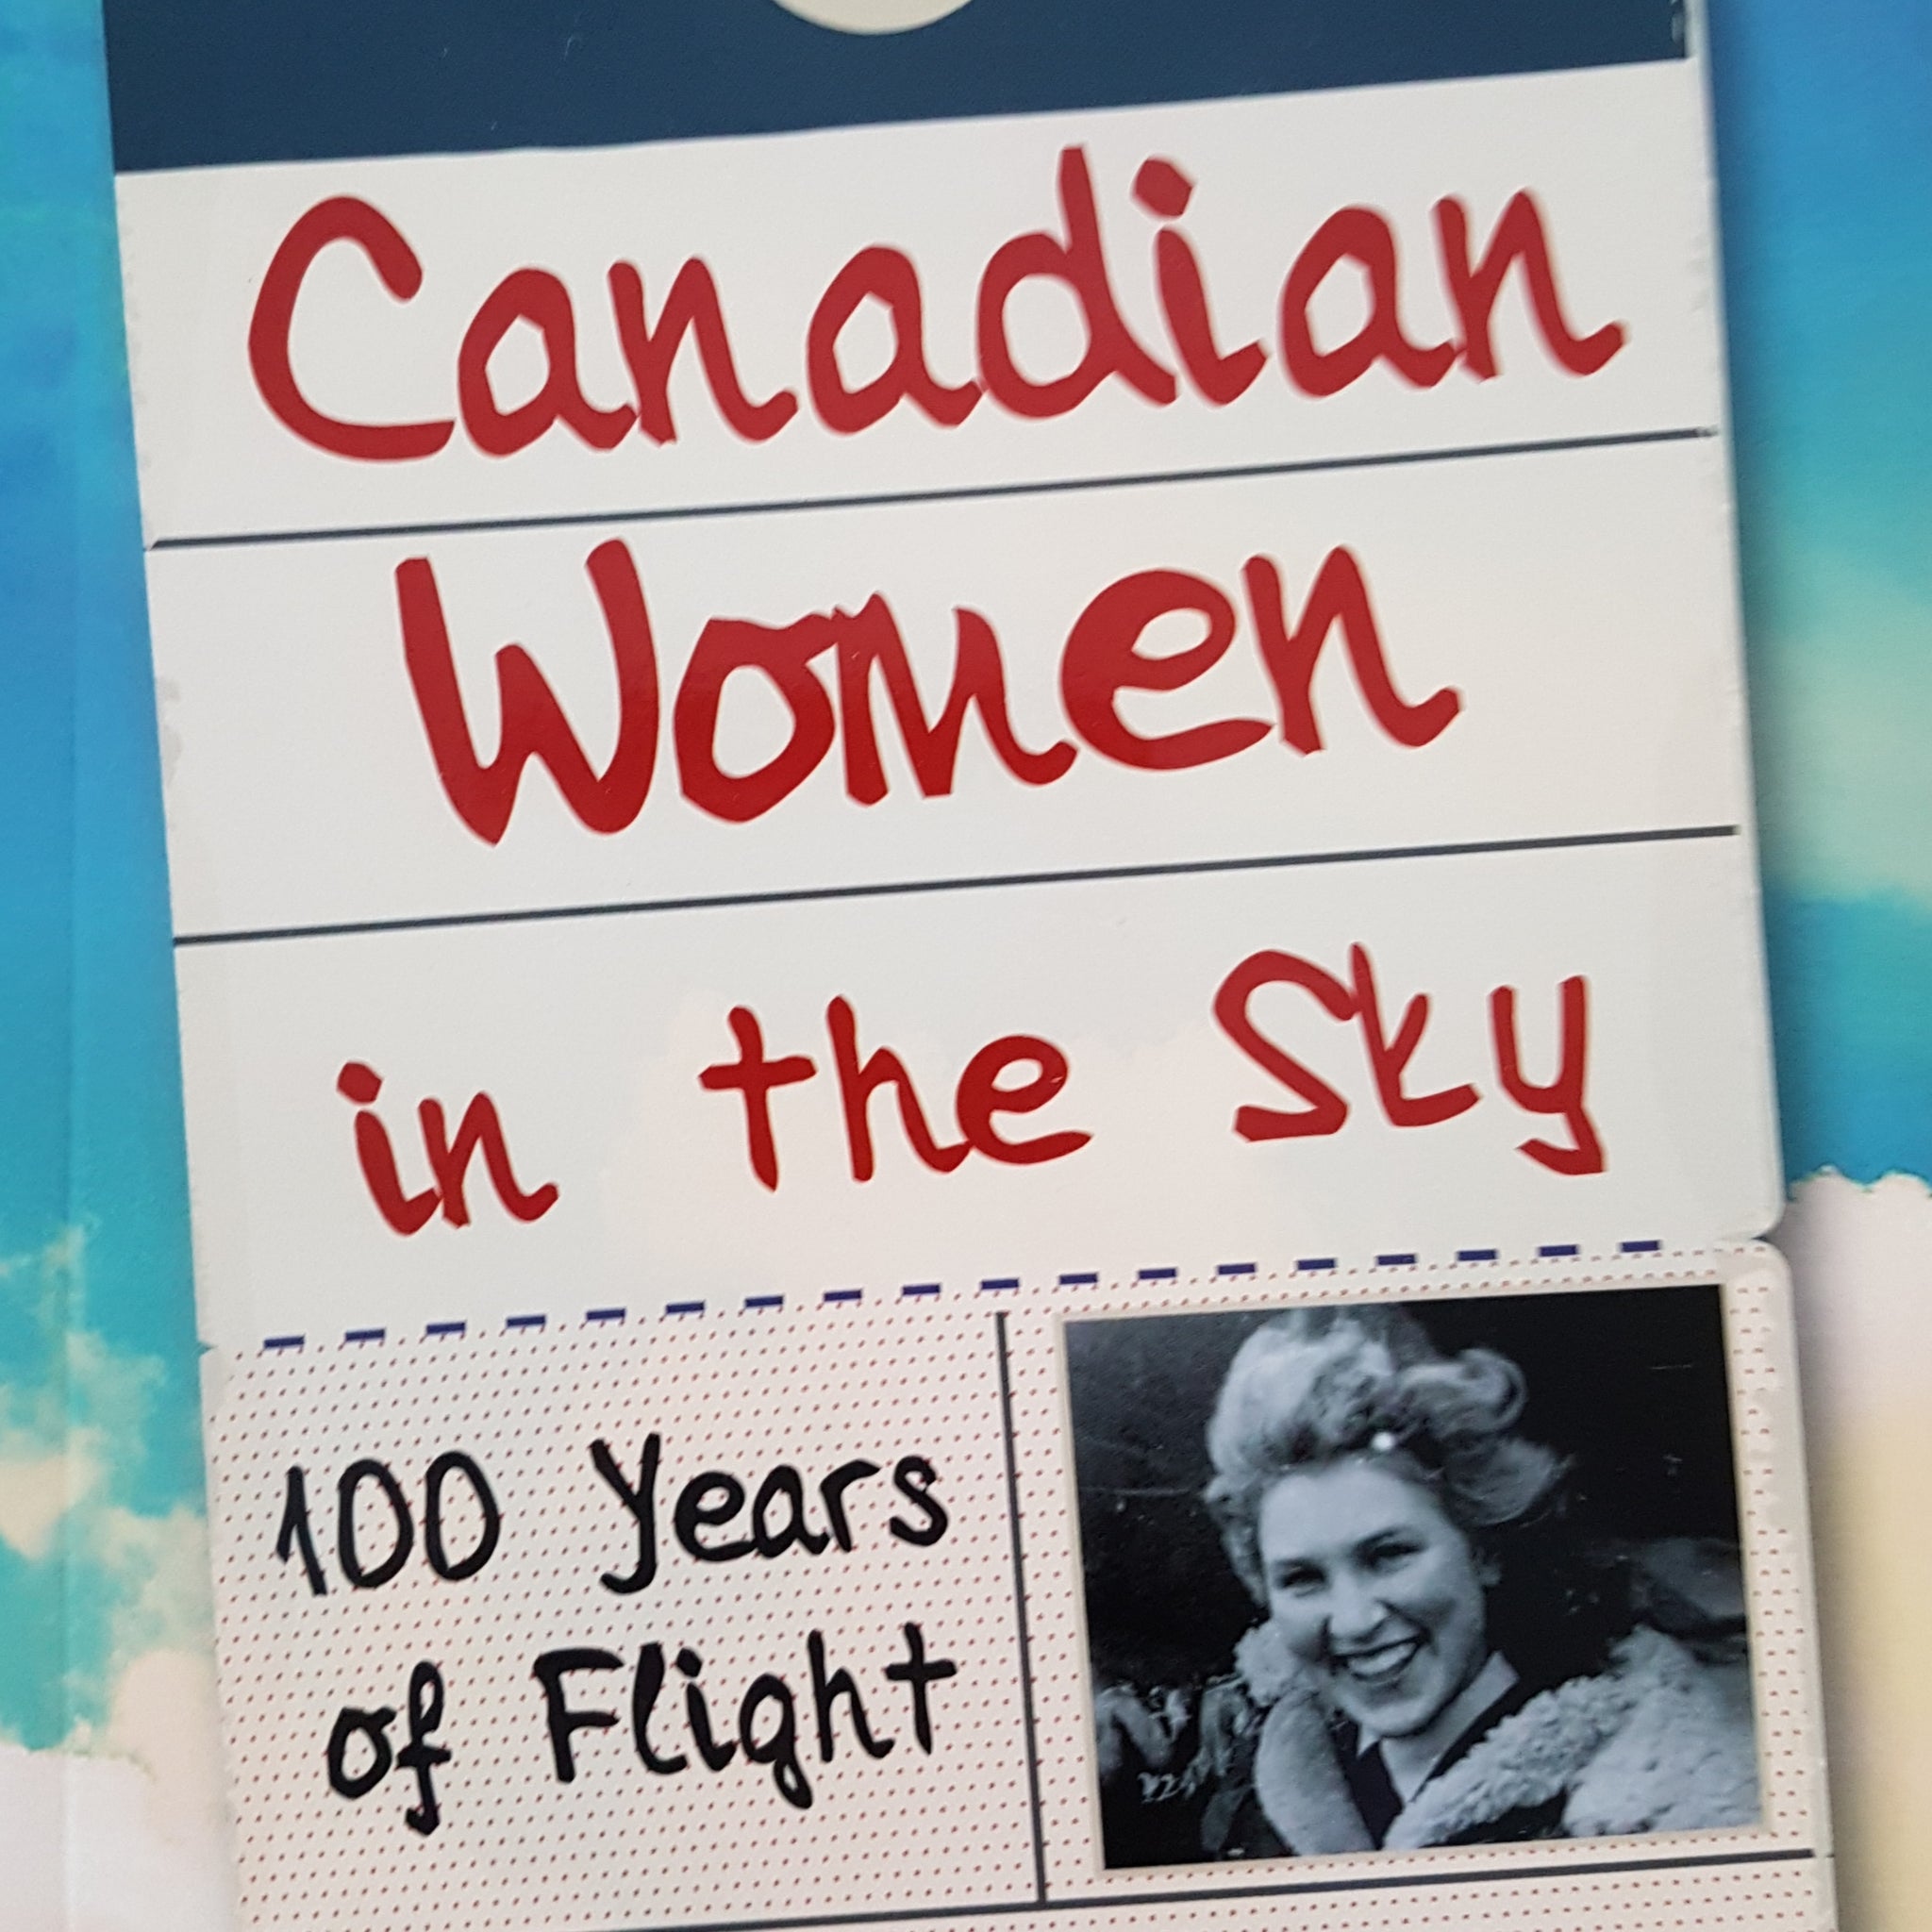 Canadian Women in the Sky (by Elizabeth Gillan Muir)